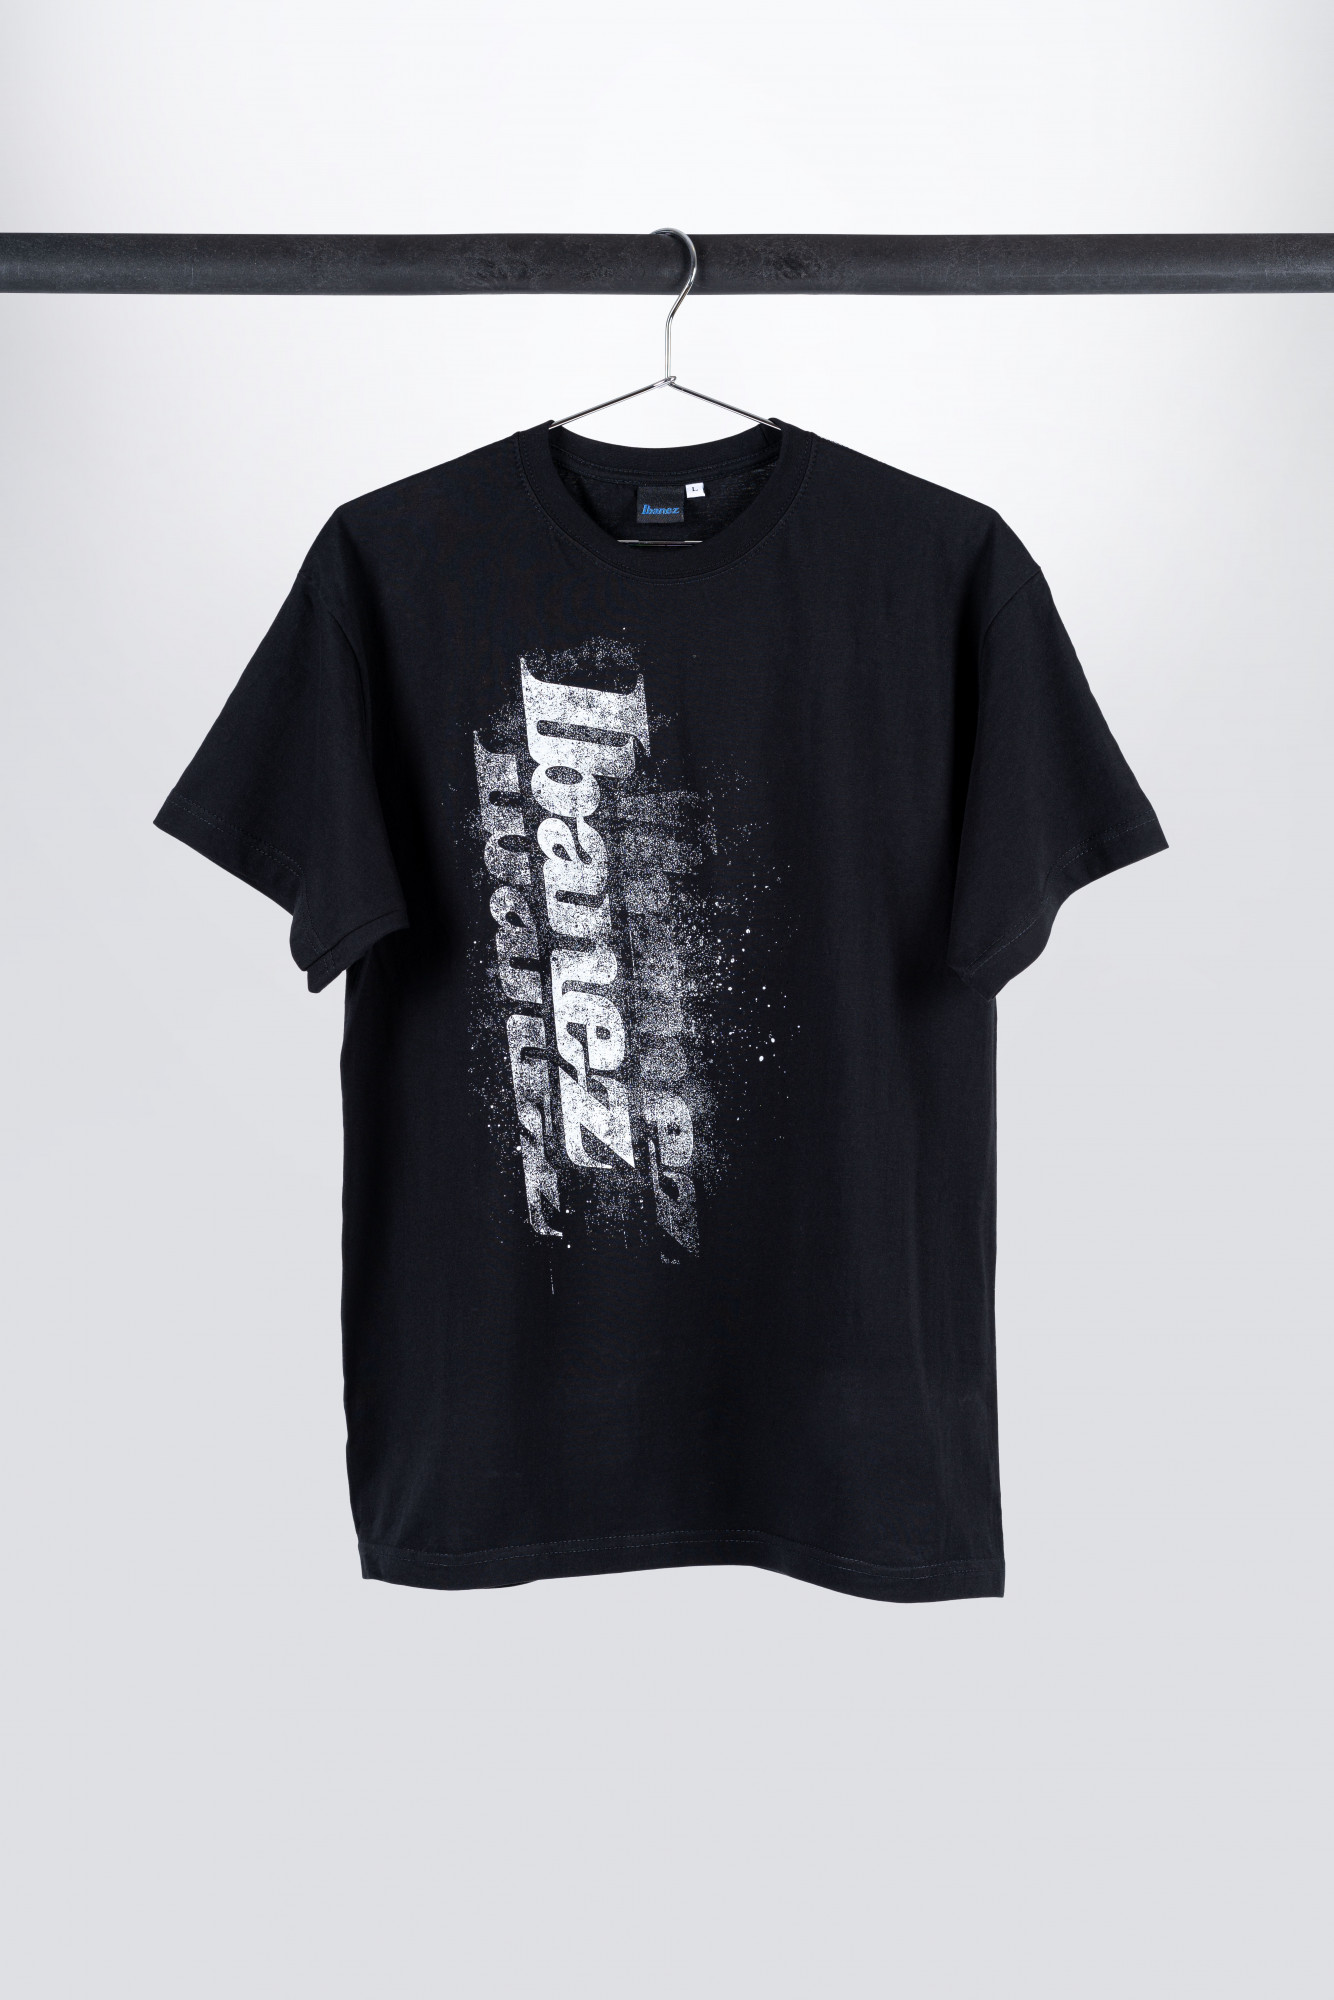 IBANEZ T-Shirt in schwarz mit weißem "Spray" Logo Frontpri